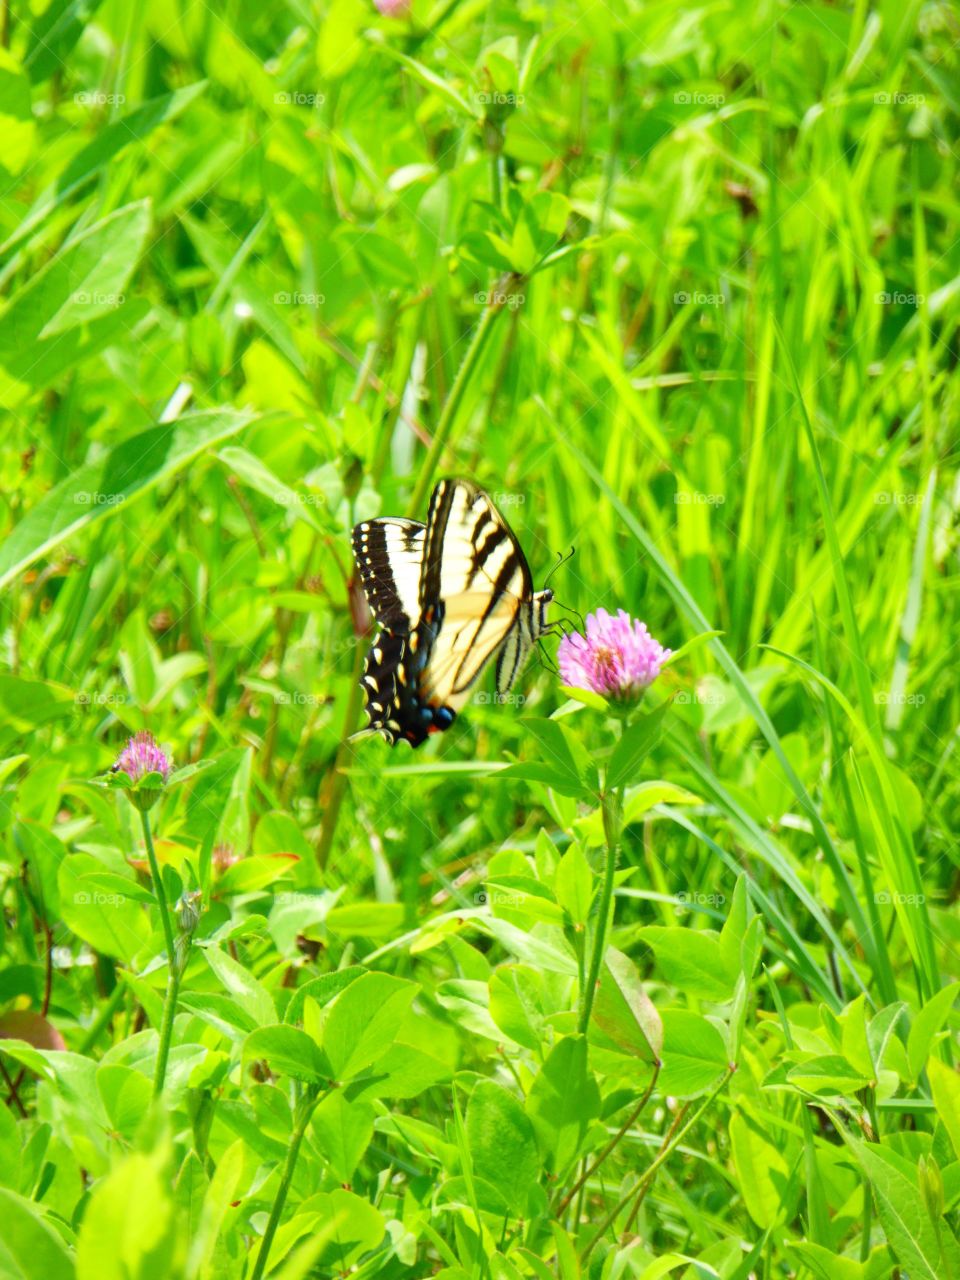 Butterfly in the field